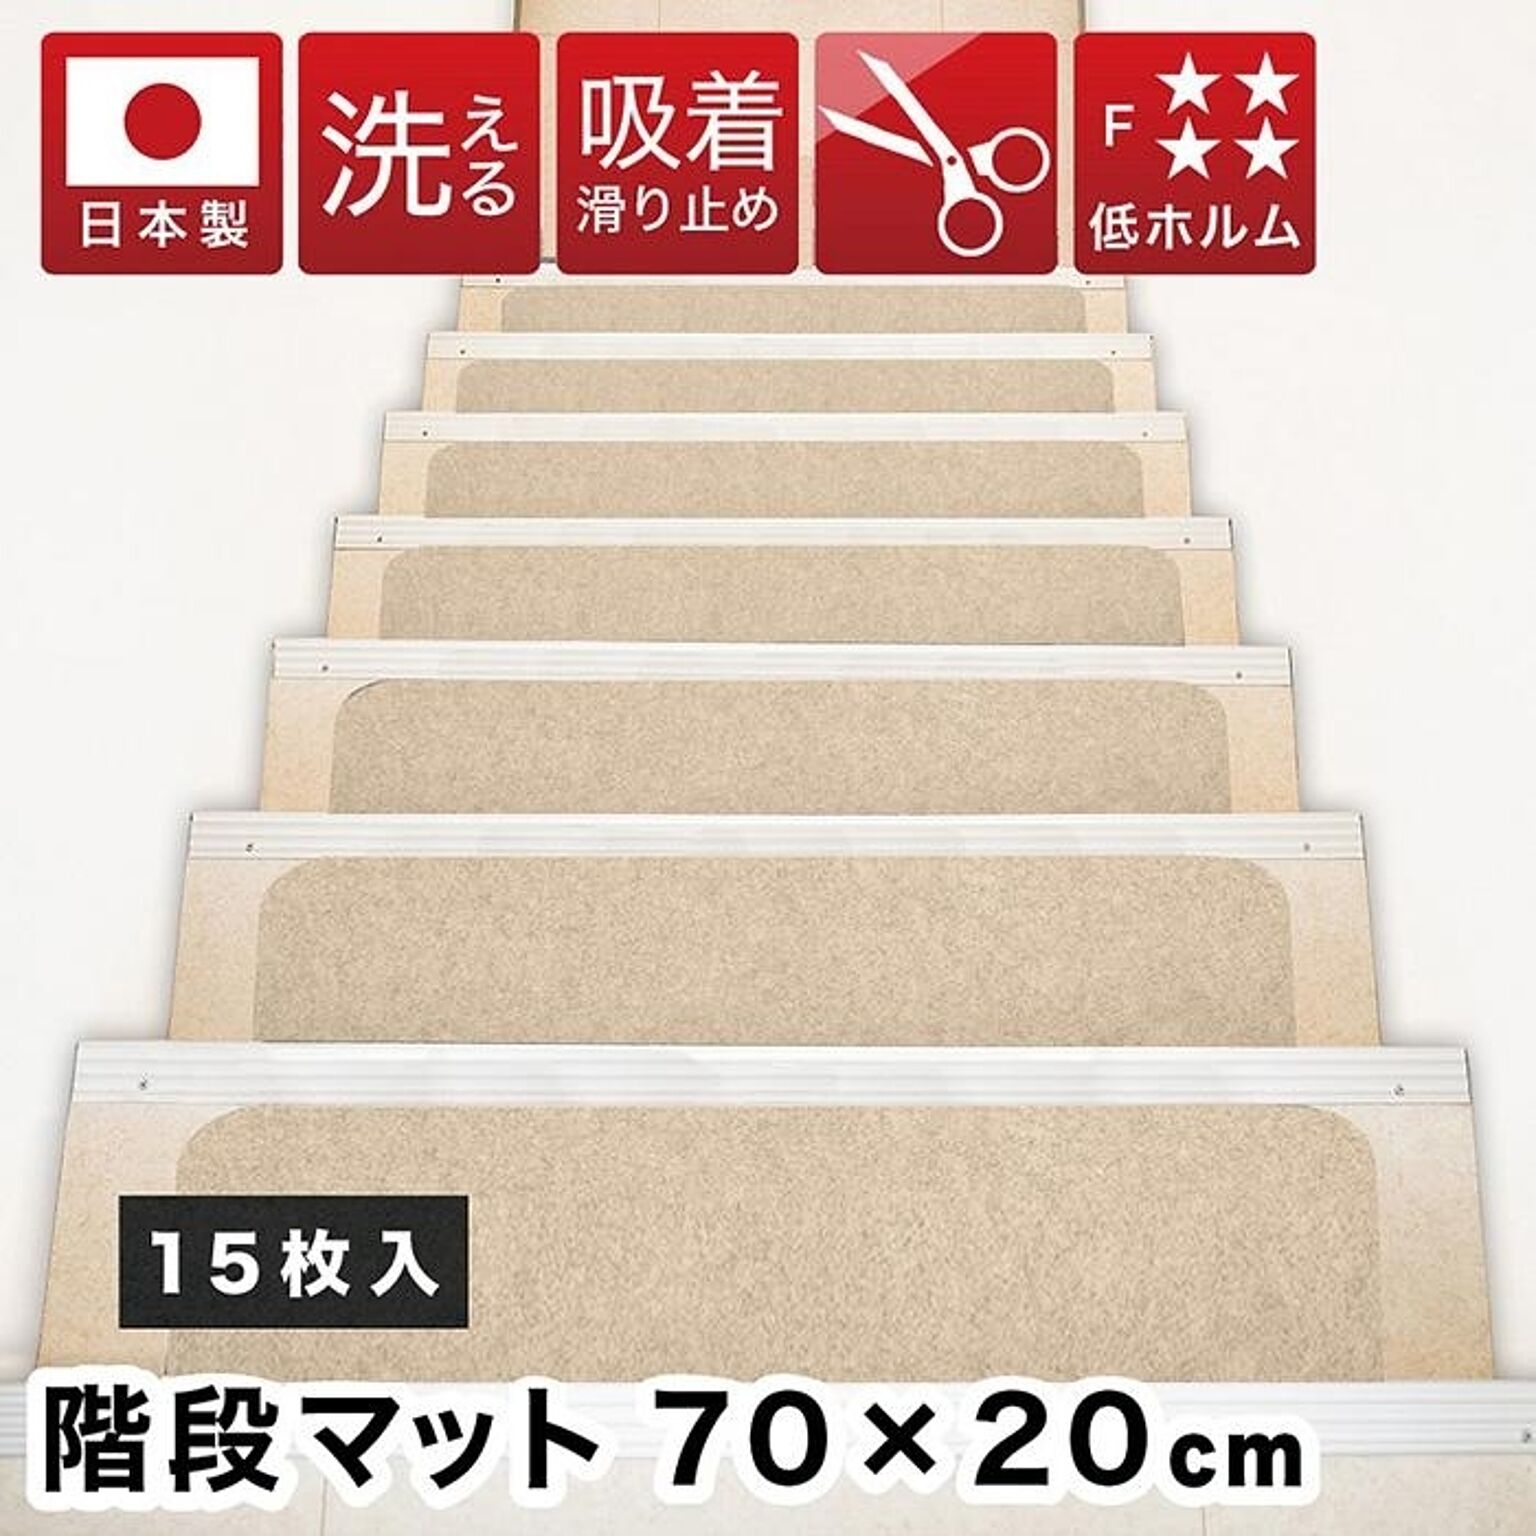 階段マット 吸着 幅70cm 15枚 日本製 階段 滑り止め 洗える フリーカット 階段用 吸着マット おくだけ はがせる 滑り止めマット 犬 猫 ペット 傷防止 置くだけ 固定 強力 ズレない